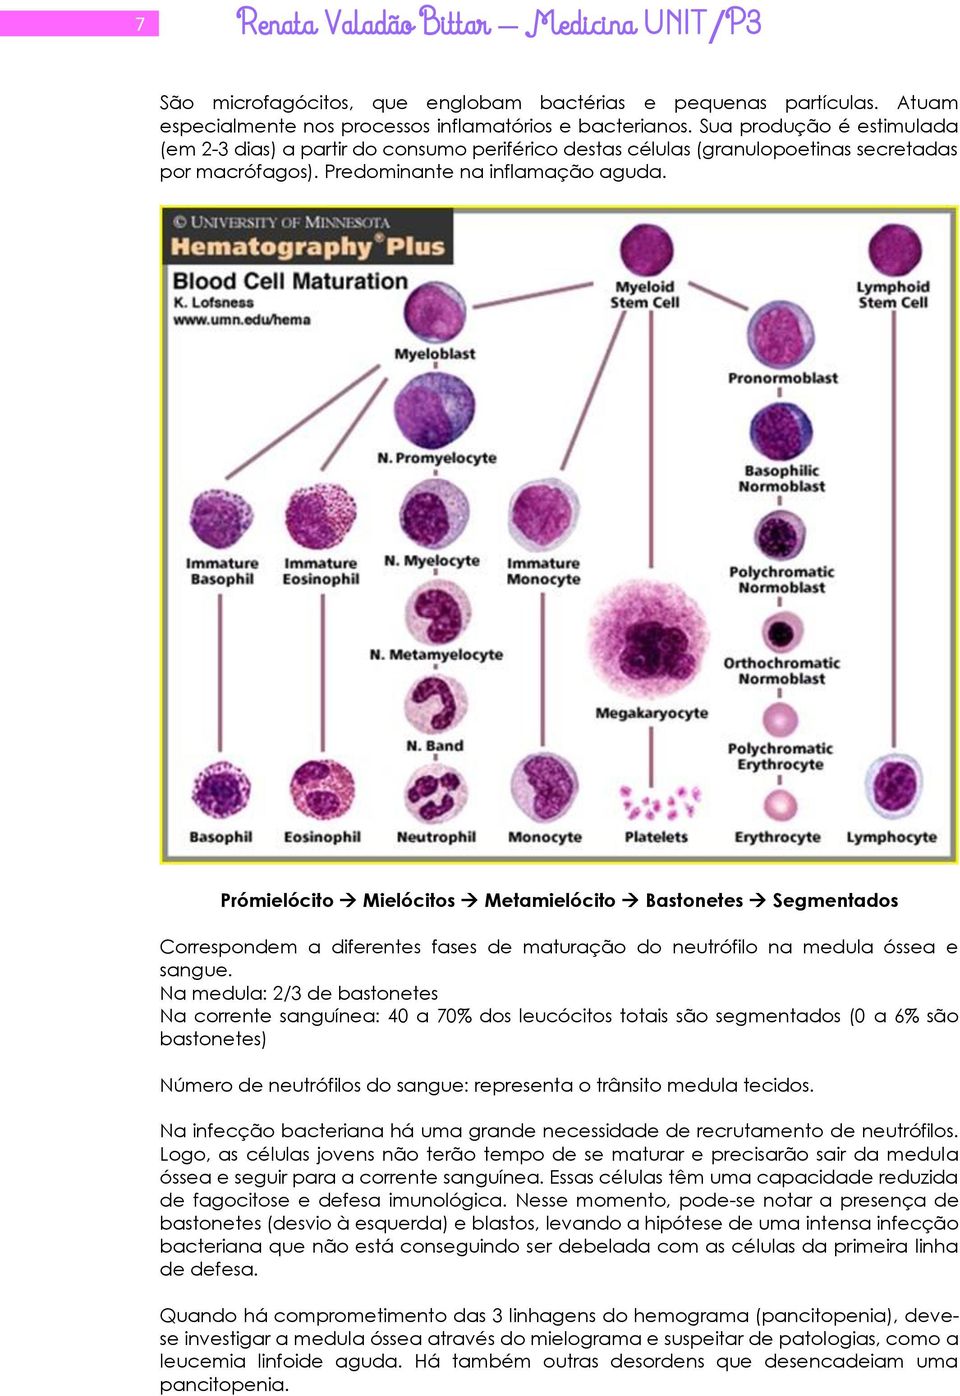 Prómielócito Mielócitos Metamielócito Bastonetes Segmentados Correspondem a diferentes fases de maturação do neutrófilo na medula óssea e sangue.